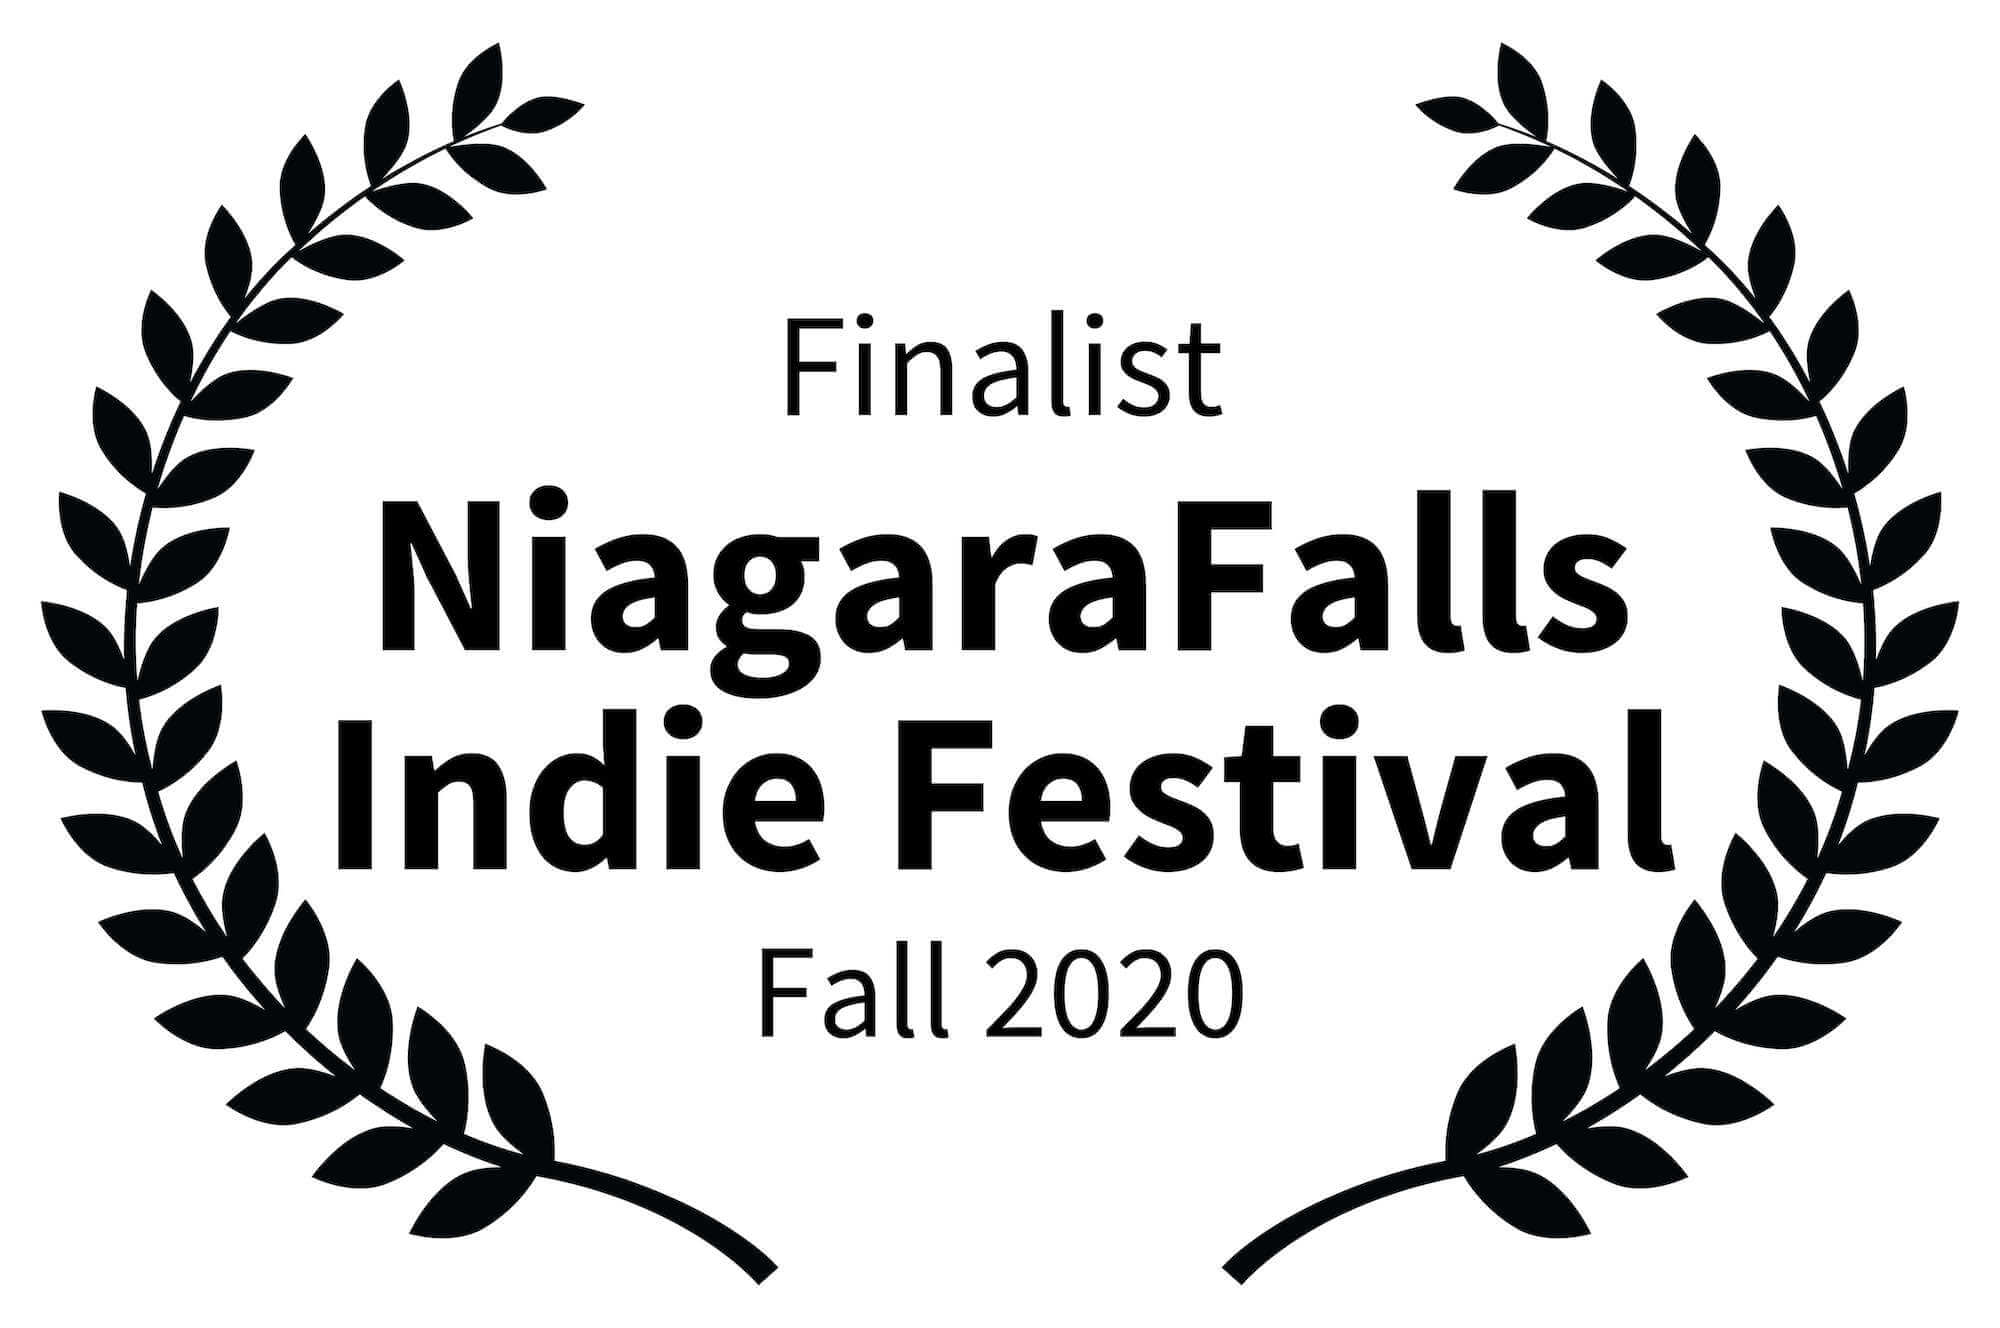 Finalist - NiagaraFalls Indie Festival Fall 2020